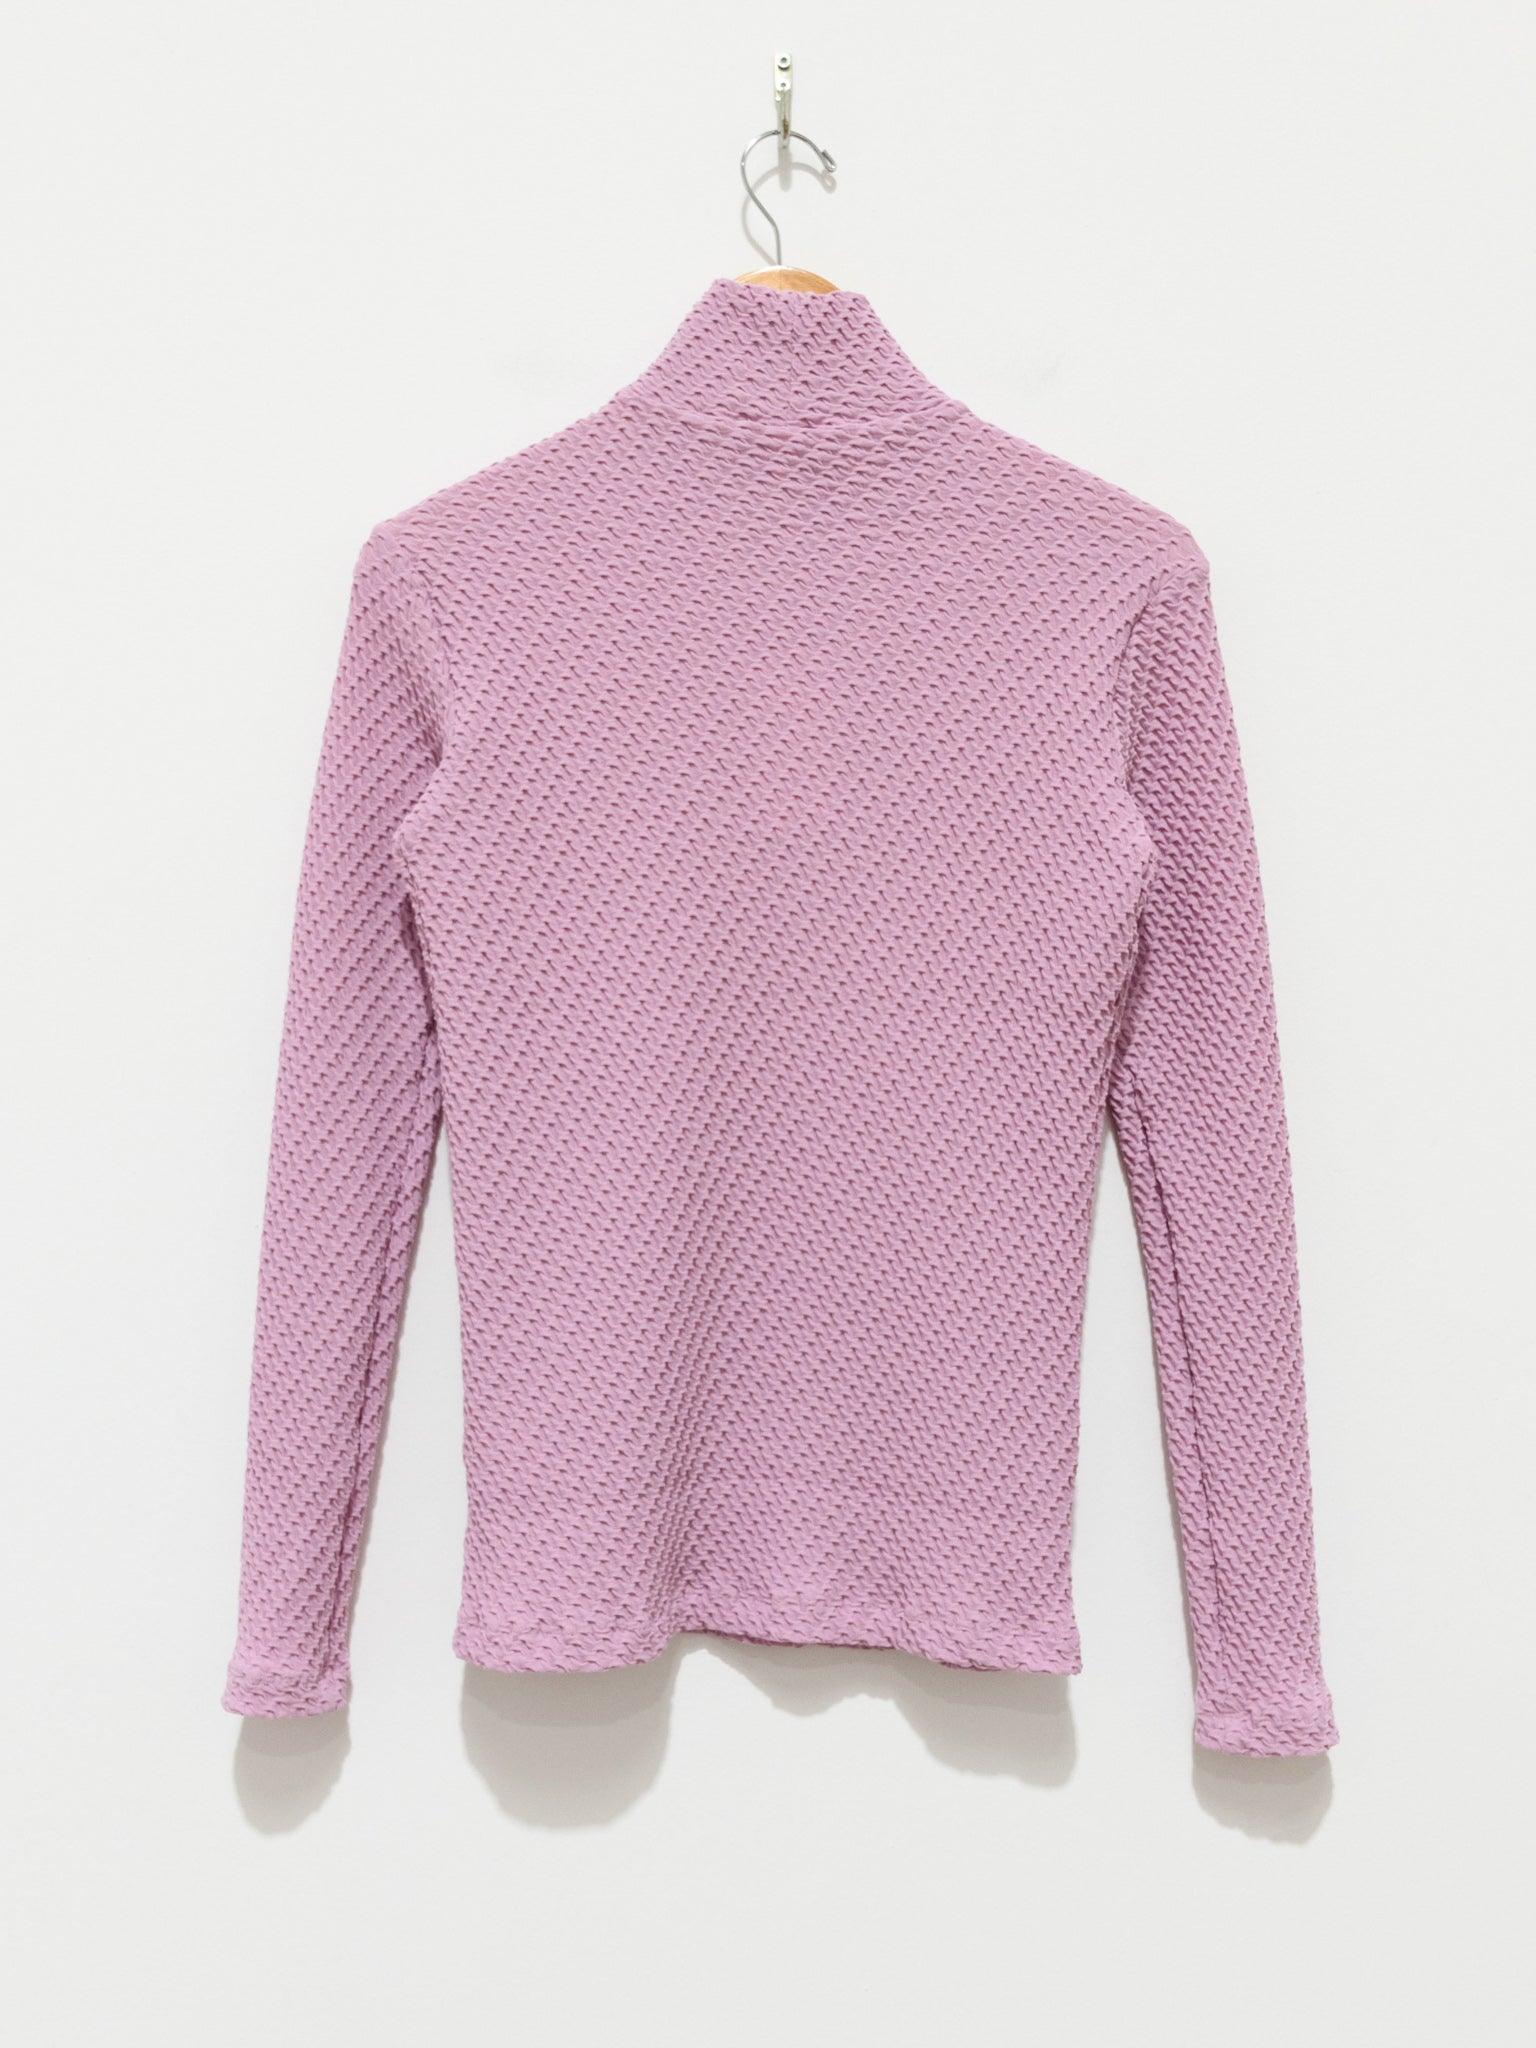 Namu Shop - Babaco Shrink Knit Turtleneck - Lavender Pink